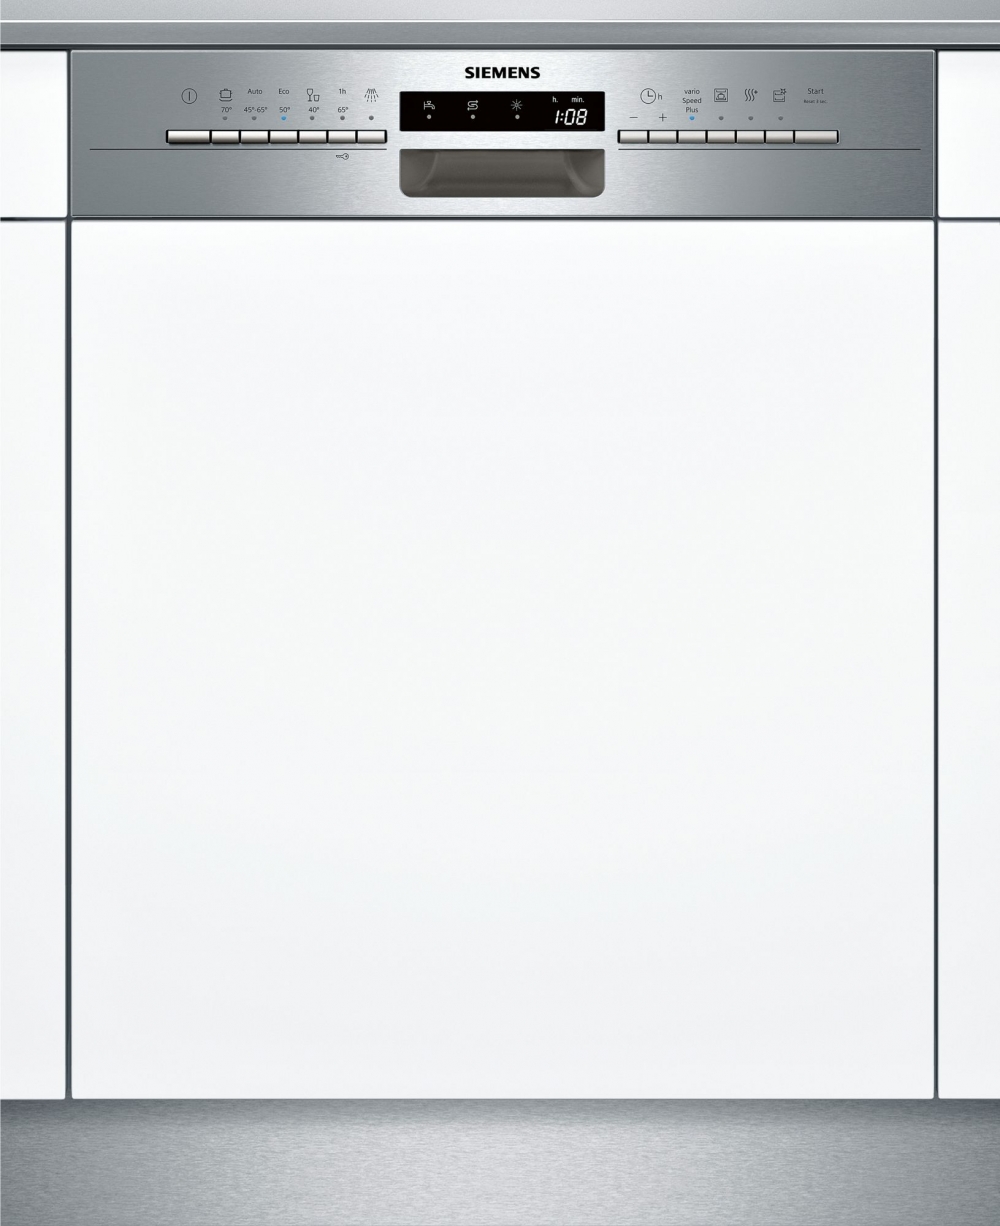 качественные недорогие встроенные посудомоечные машины конце годов Александр